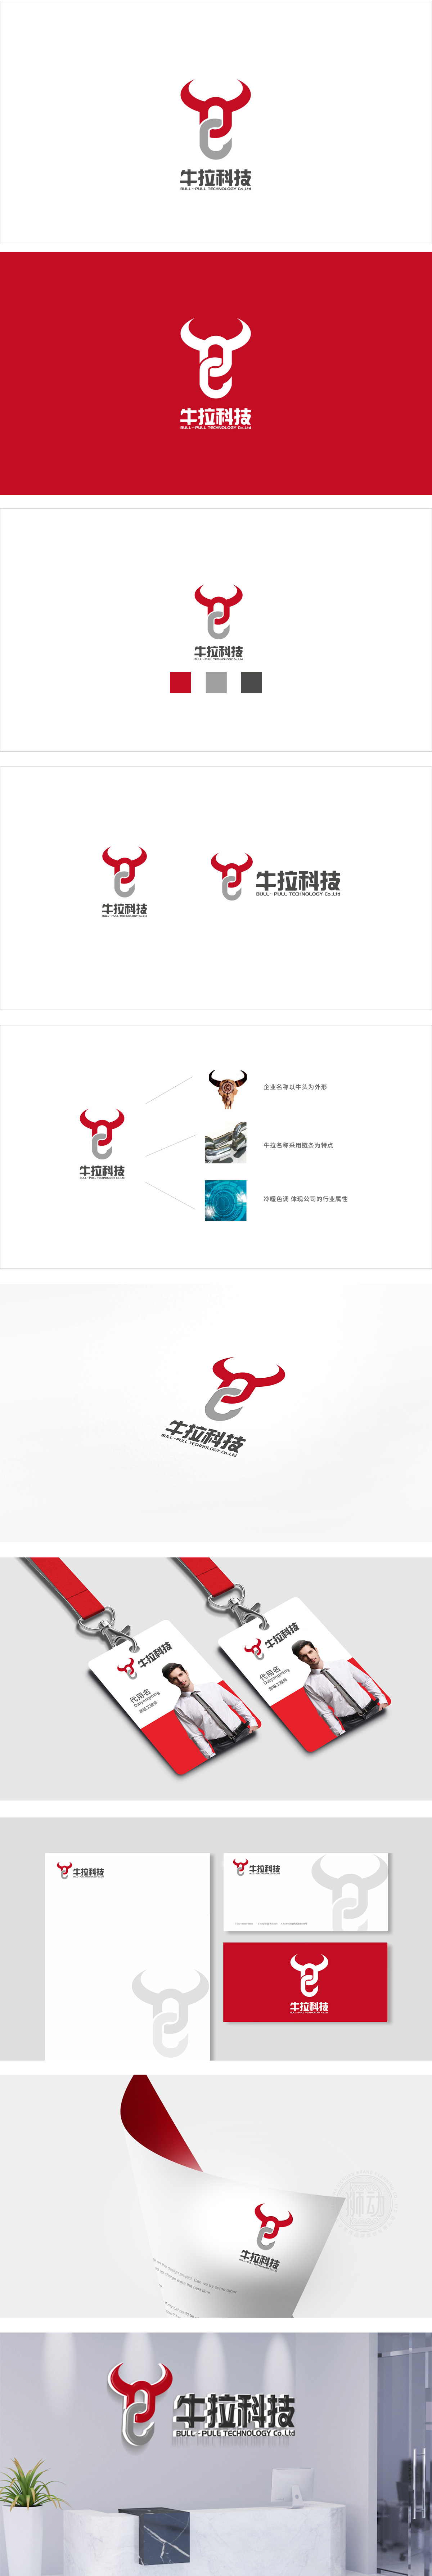 北京牛拉科技 互联网线上平台 LOGO设计